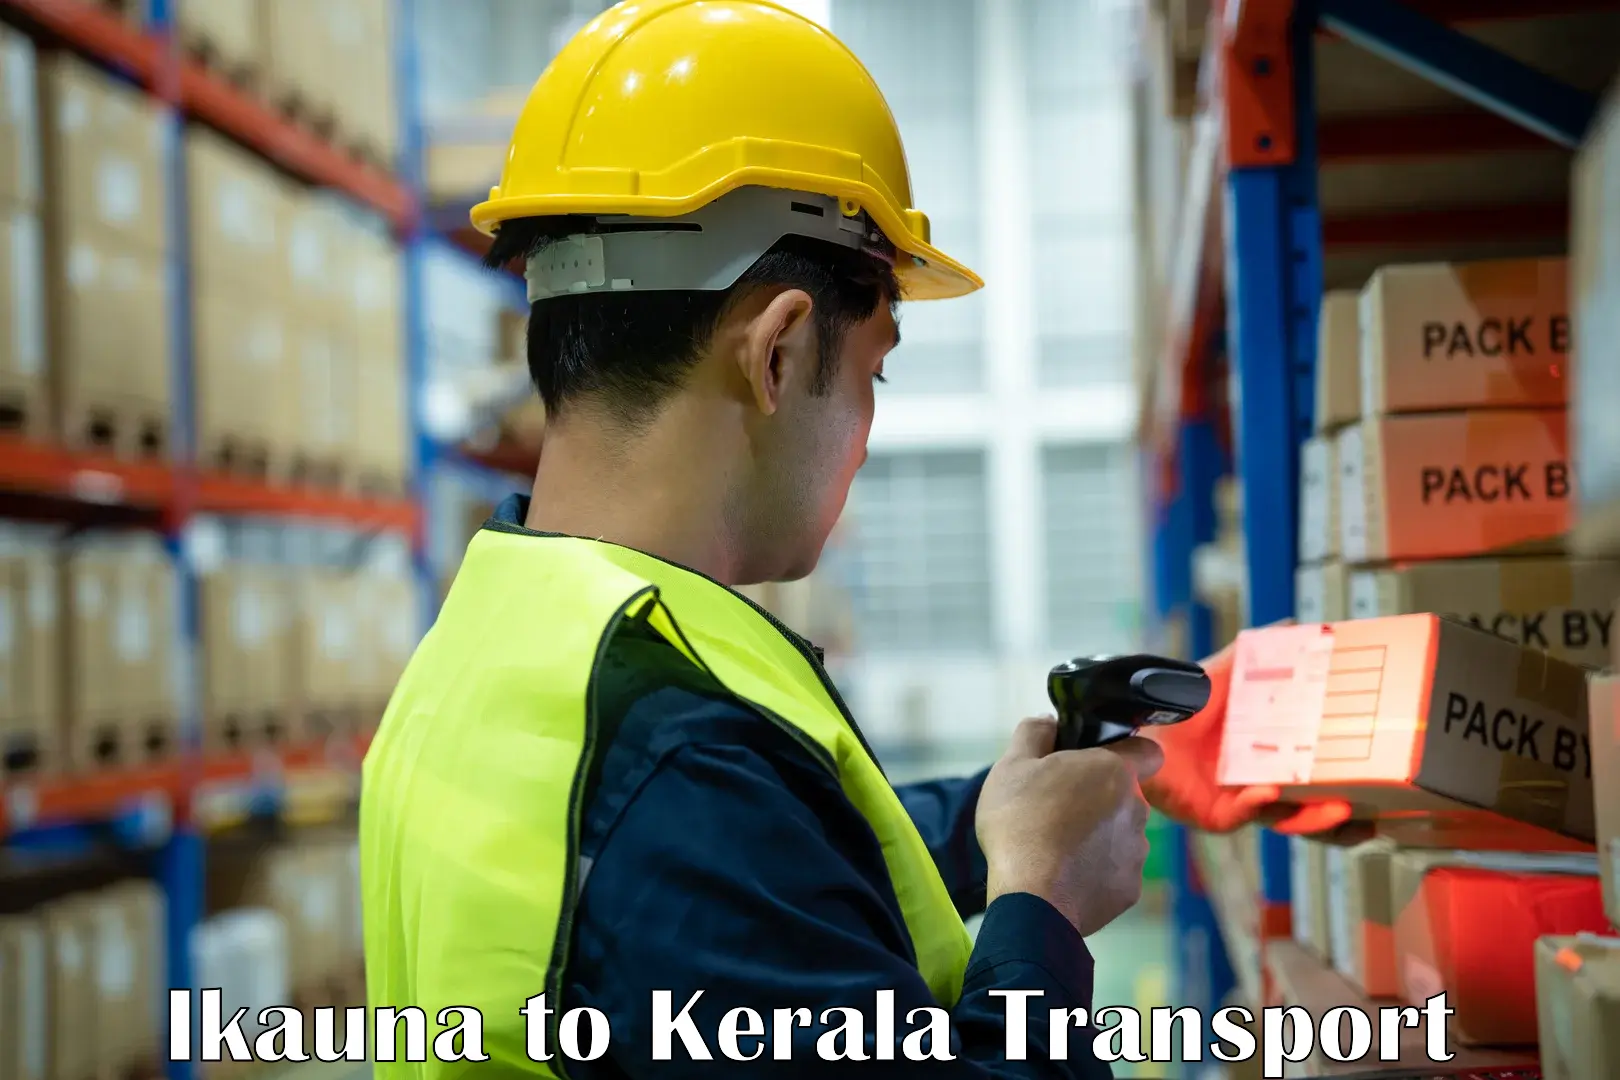 Daily parcel service transport Ikauna to Mundakayam